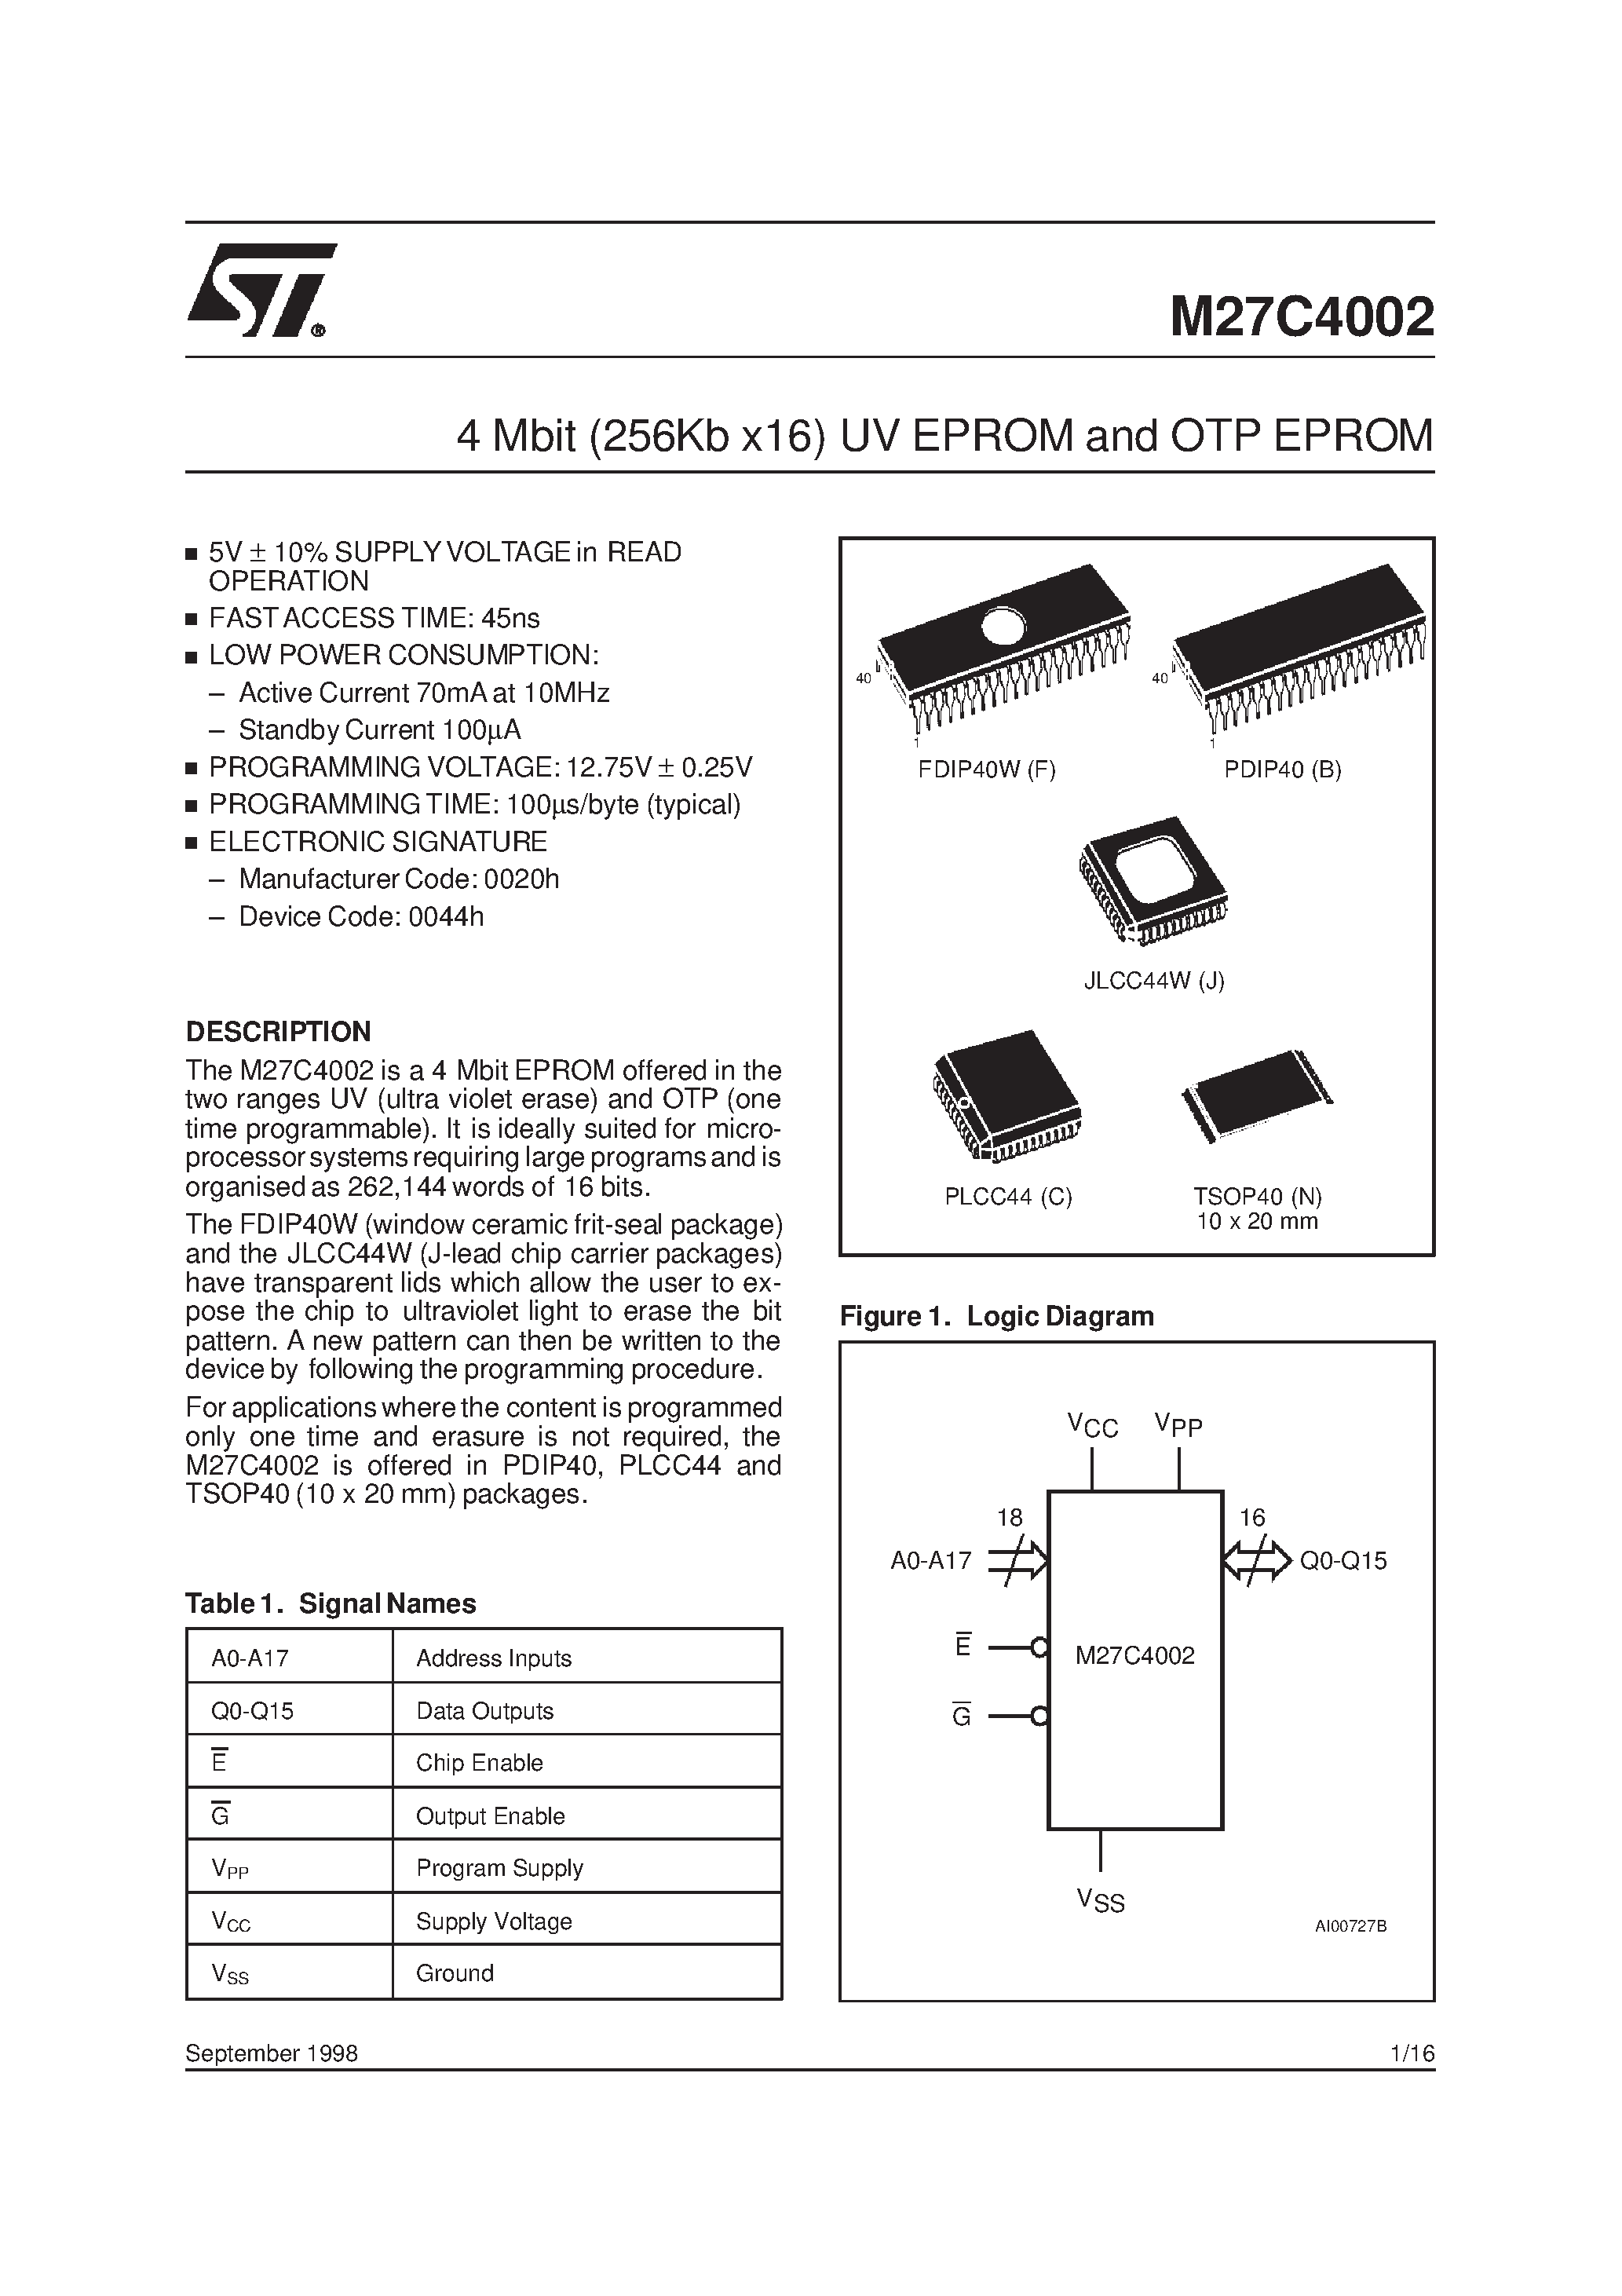 Datasheet M27C4002-10N1X - 4 Mbit 256Kb x16 UV EPROM and OTP EPROM page 1